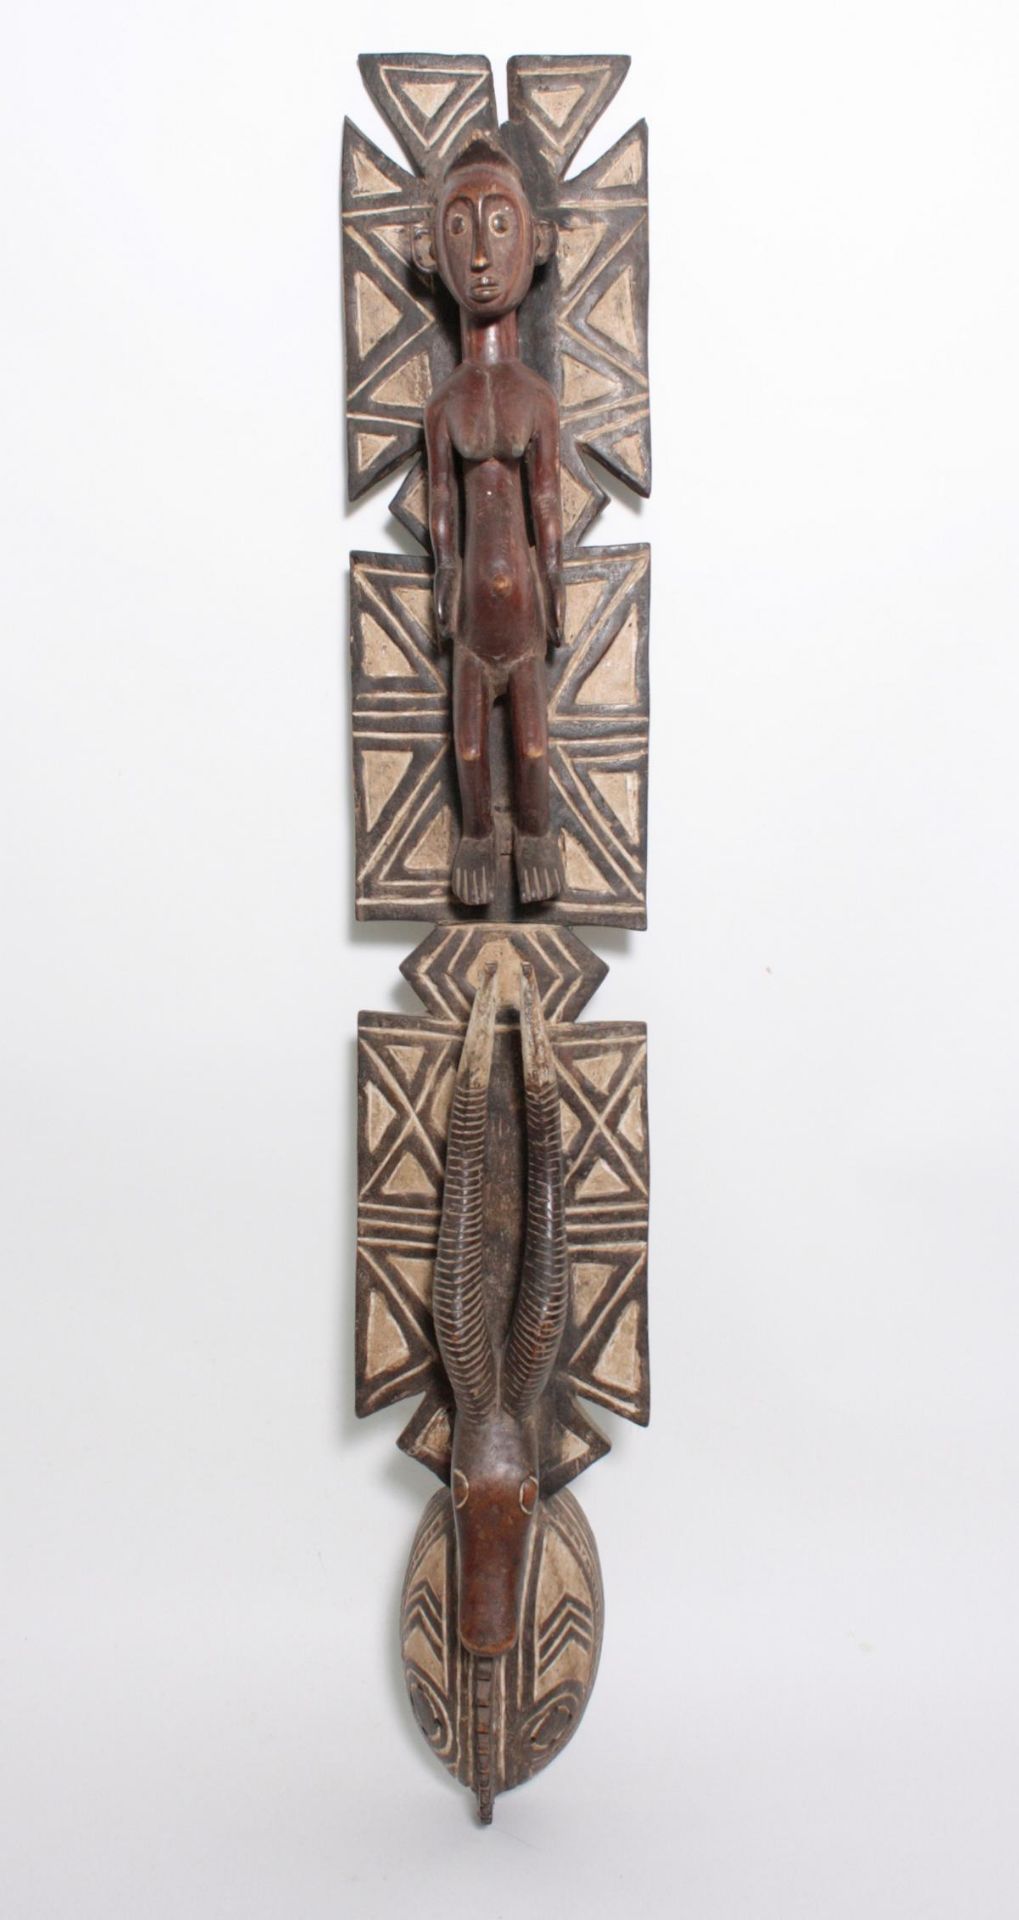 Aufsatz-Tanzmaske, Mossi, Burkina Faso, 1. Hälfte 20. Jh.Holz, geschnitzt. Flach reliefiertes